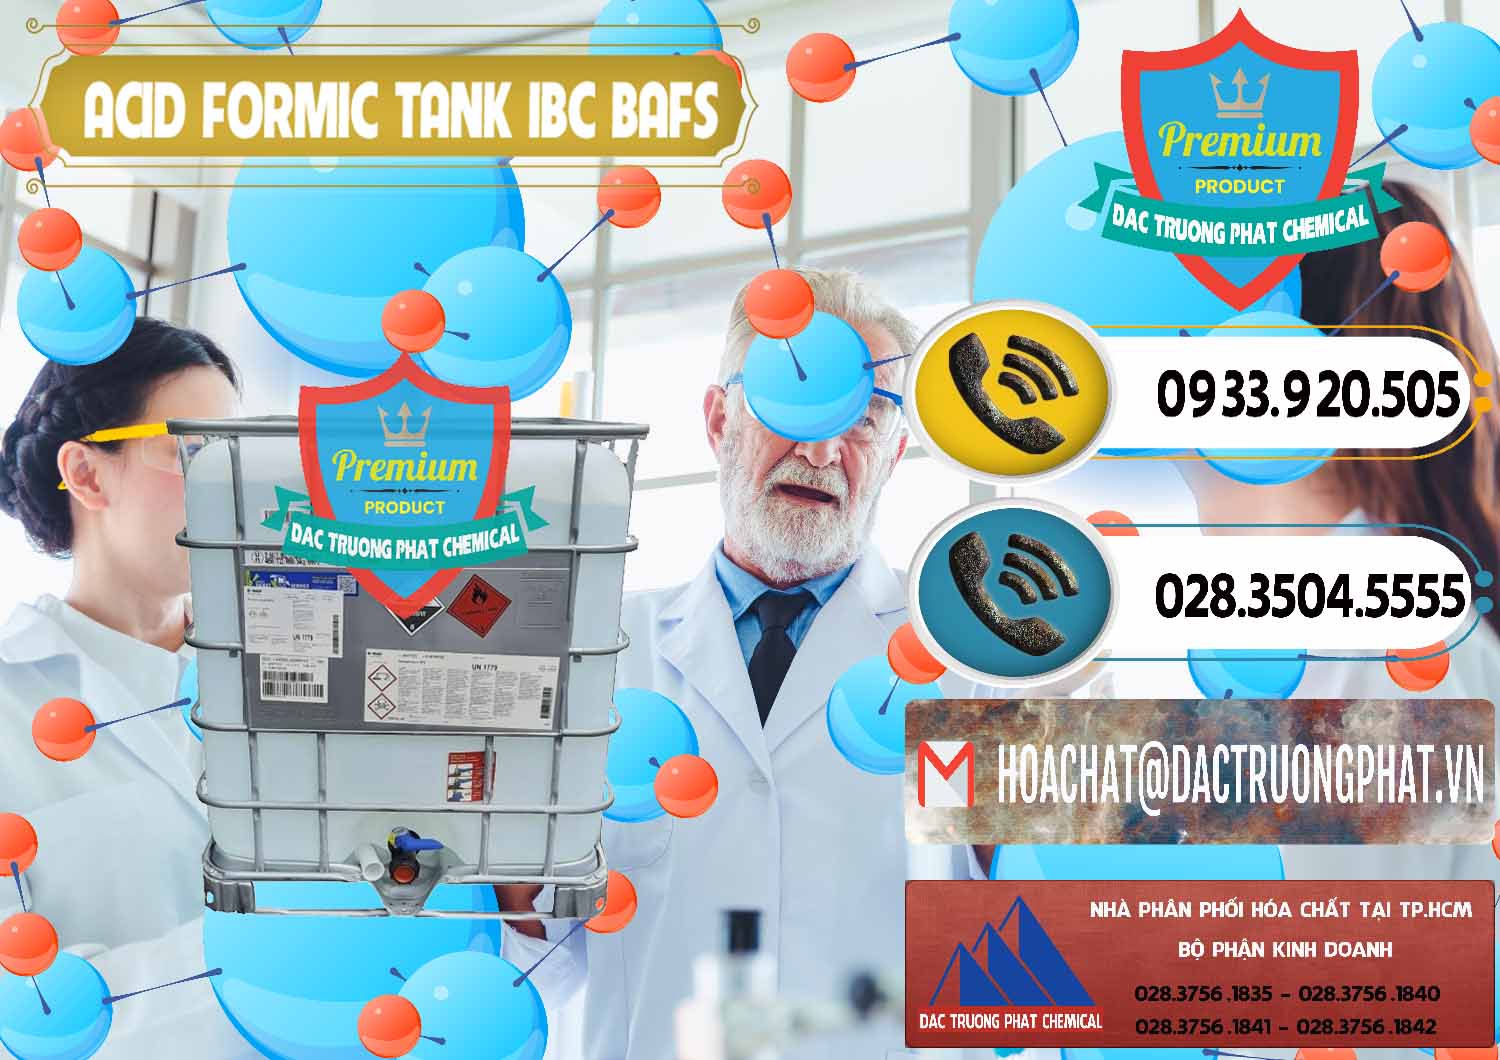 Đơn vị kinh doanh _ bán Acid Formic - Axit Formic Tank - Bồn IBC BASF Đức - 0366 - Cty chuyên phân phối & bán hóa chất tại TP.HCM - hoachatdetnhuom.vn